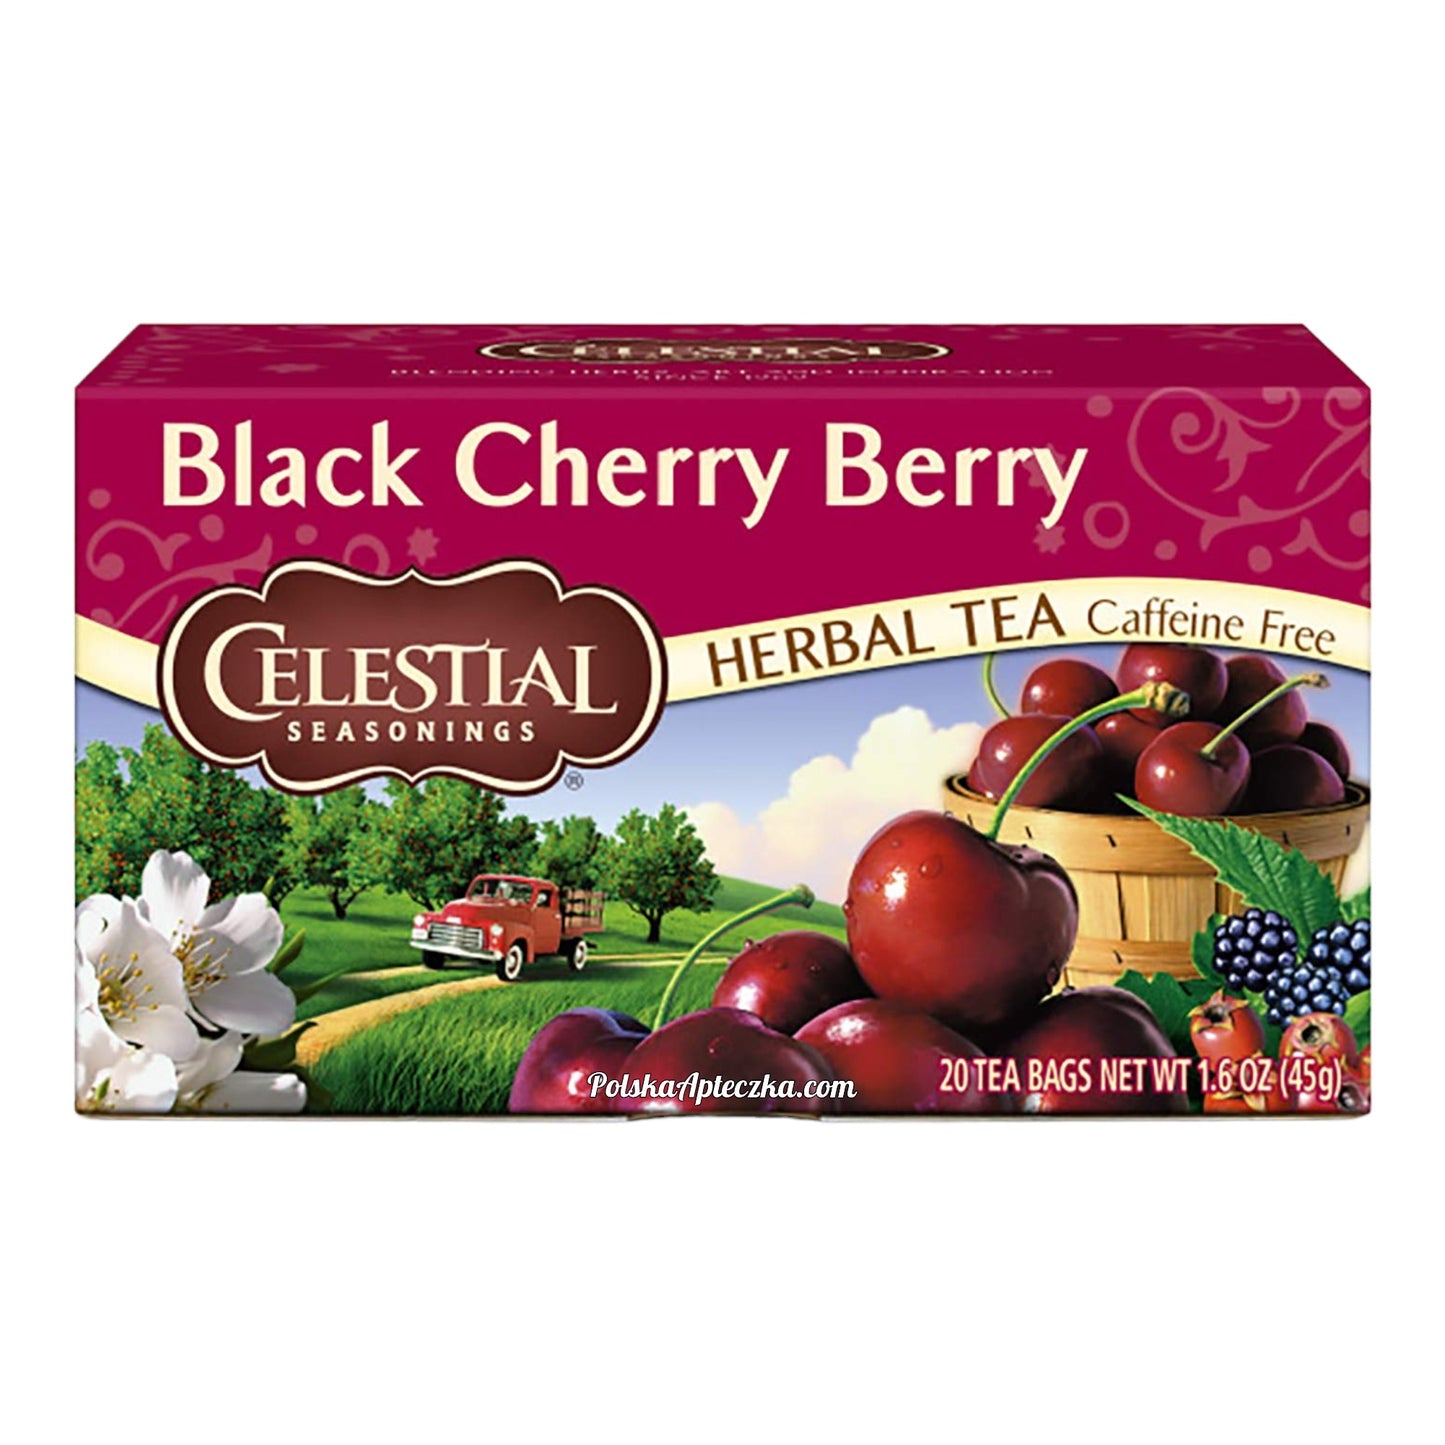 Black Cherry Berry herbal tea 20 bags, Celestial Seasonings